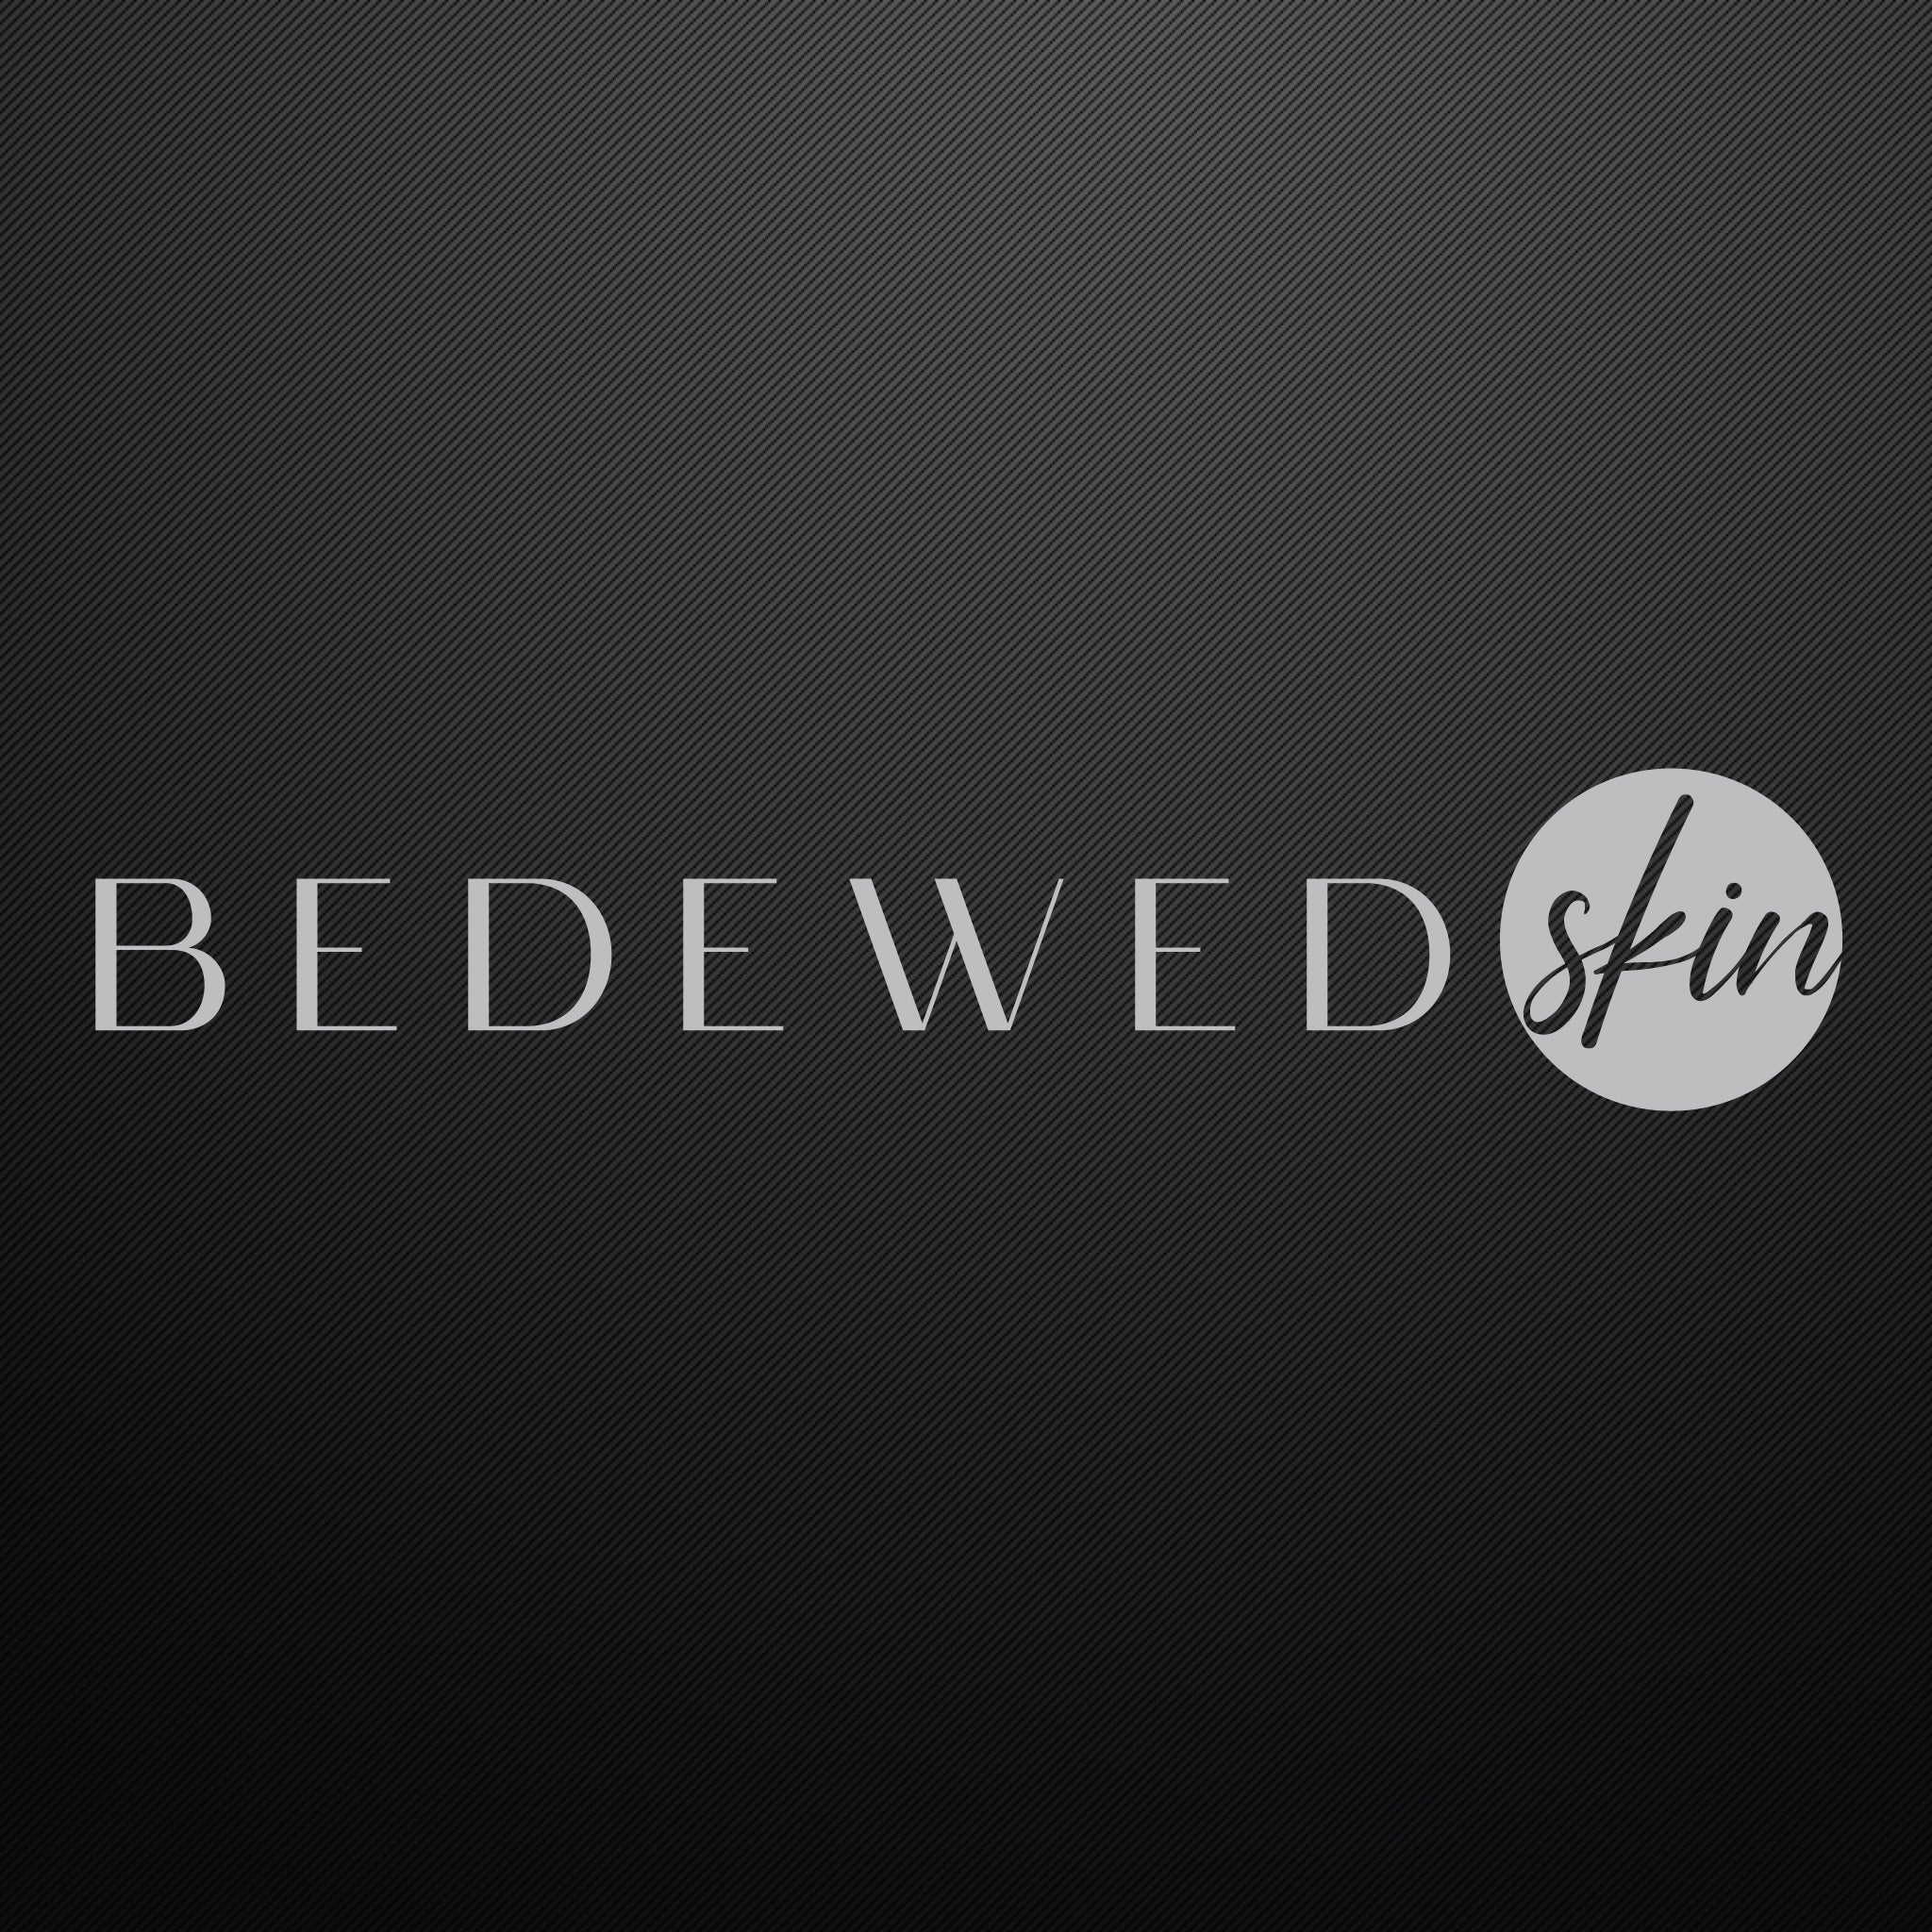 Welcome To BedewedSKIN's Skin Education Blog!